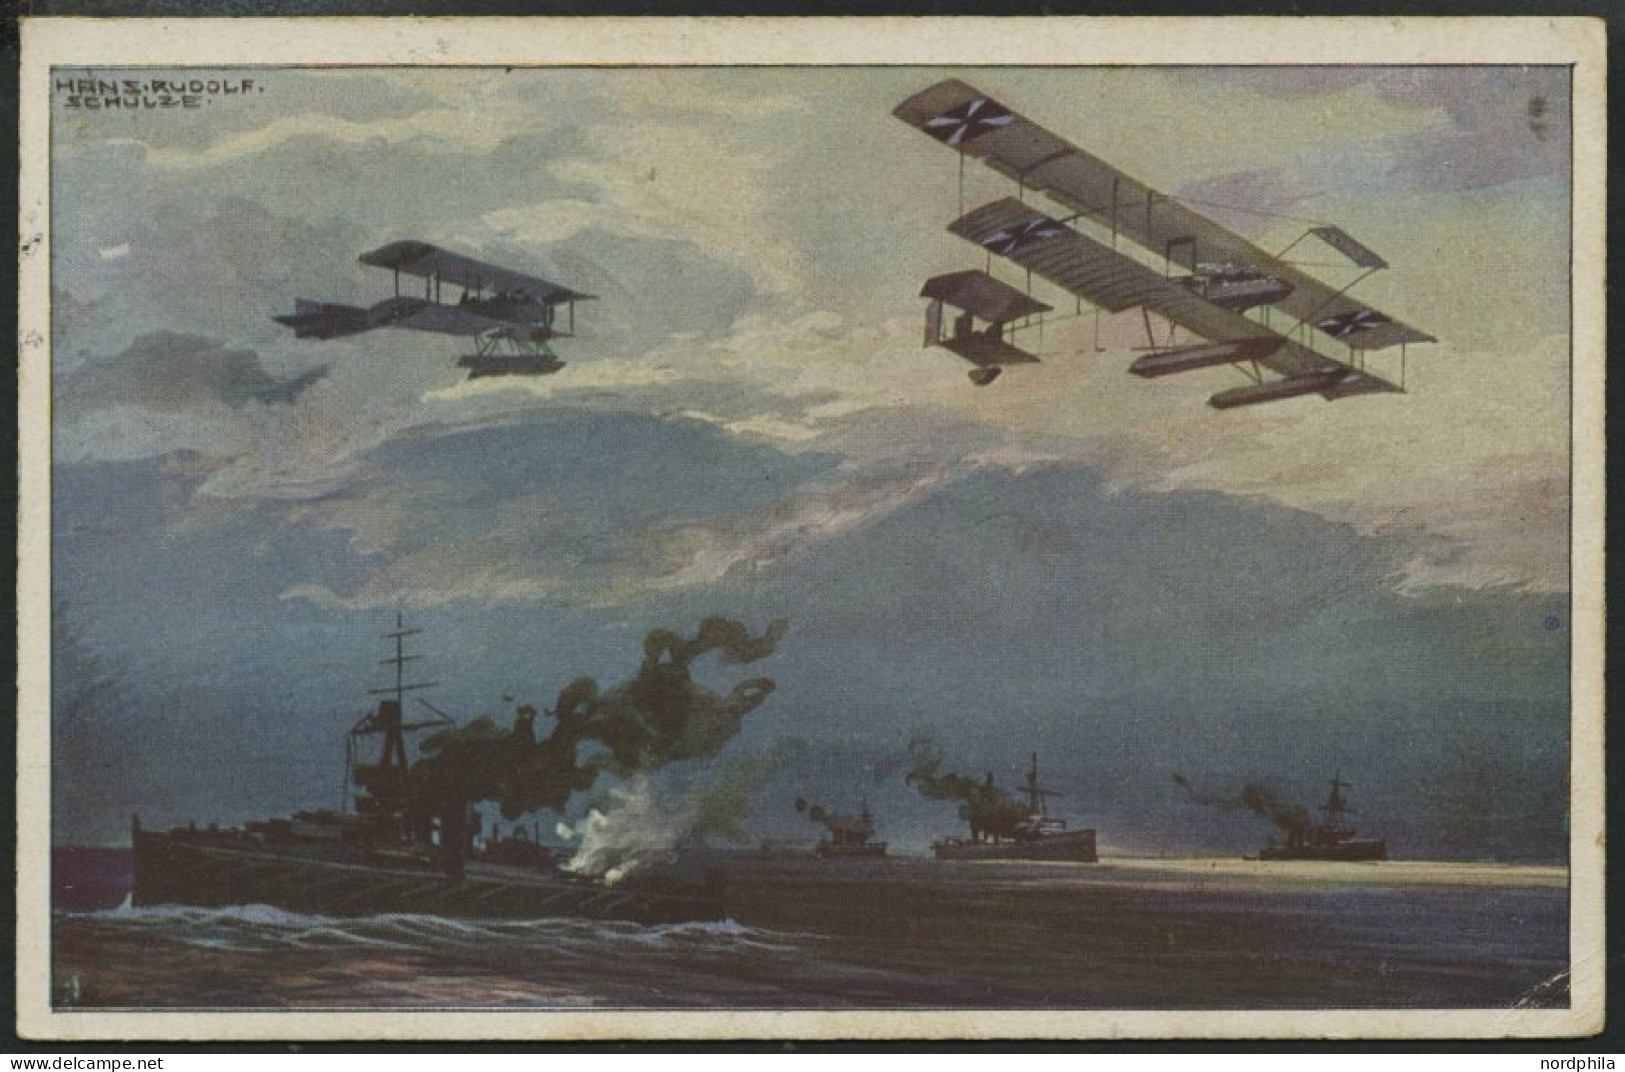 ALTE POSTKARTEN - FLUGZEUGE Wasserflugzeuge über Der Englischen Flotte, Farbige Künstlerkarte Von 1916 - Airplanes